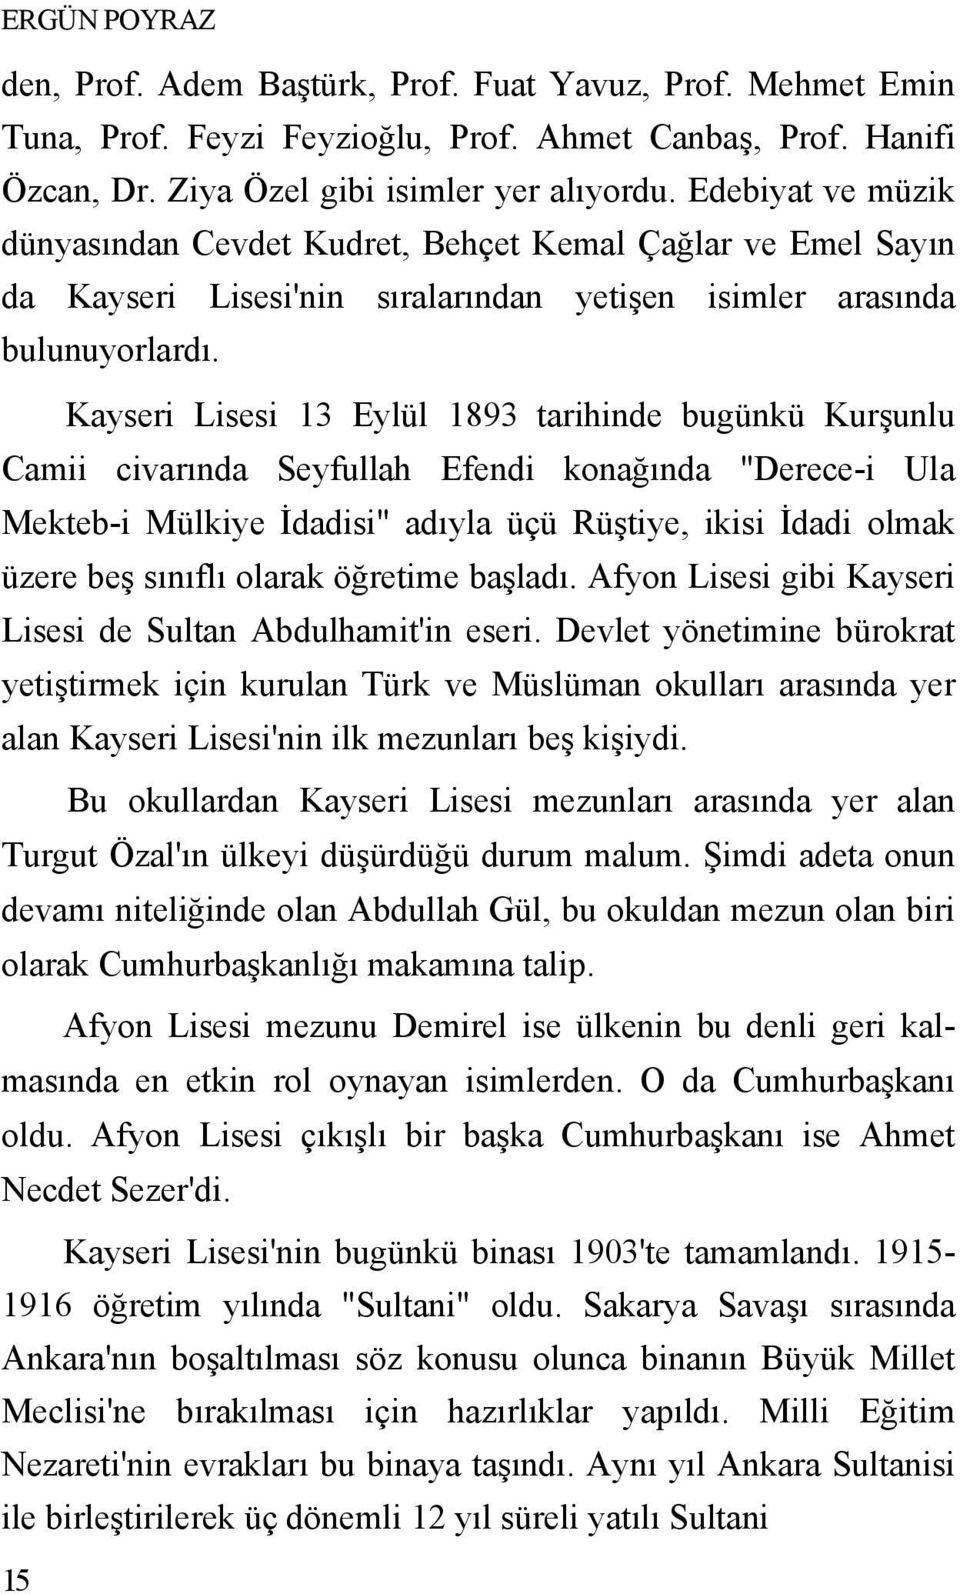 Kayseri Lisesi 13 Eylül 1893 tarihinde bugünkü Kurşunlu Camii civarında Seyfullah Efendi konağında "Derece-i Ula Mekteb-i Mülkiye Đdadisi" adıyla üçü Rüştiye, ikisi Đdadi olmak üzere beş sınıflı